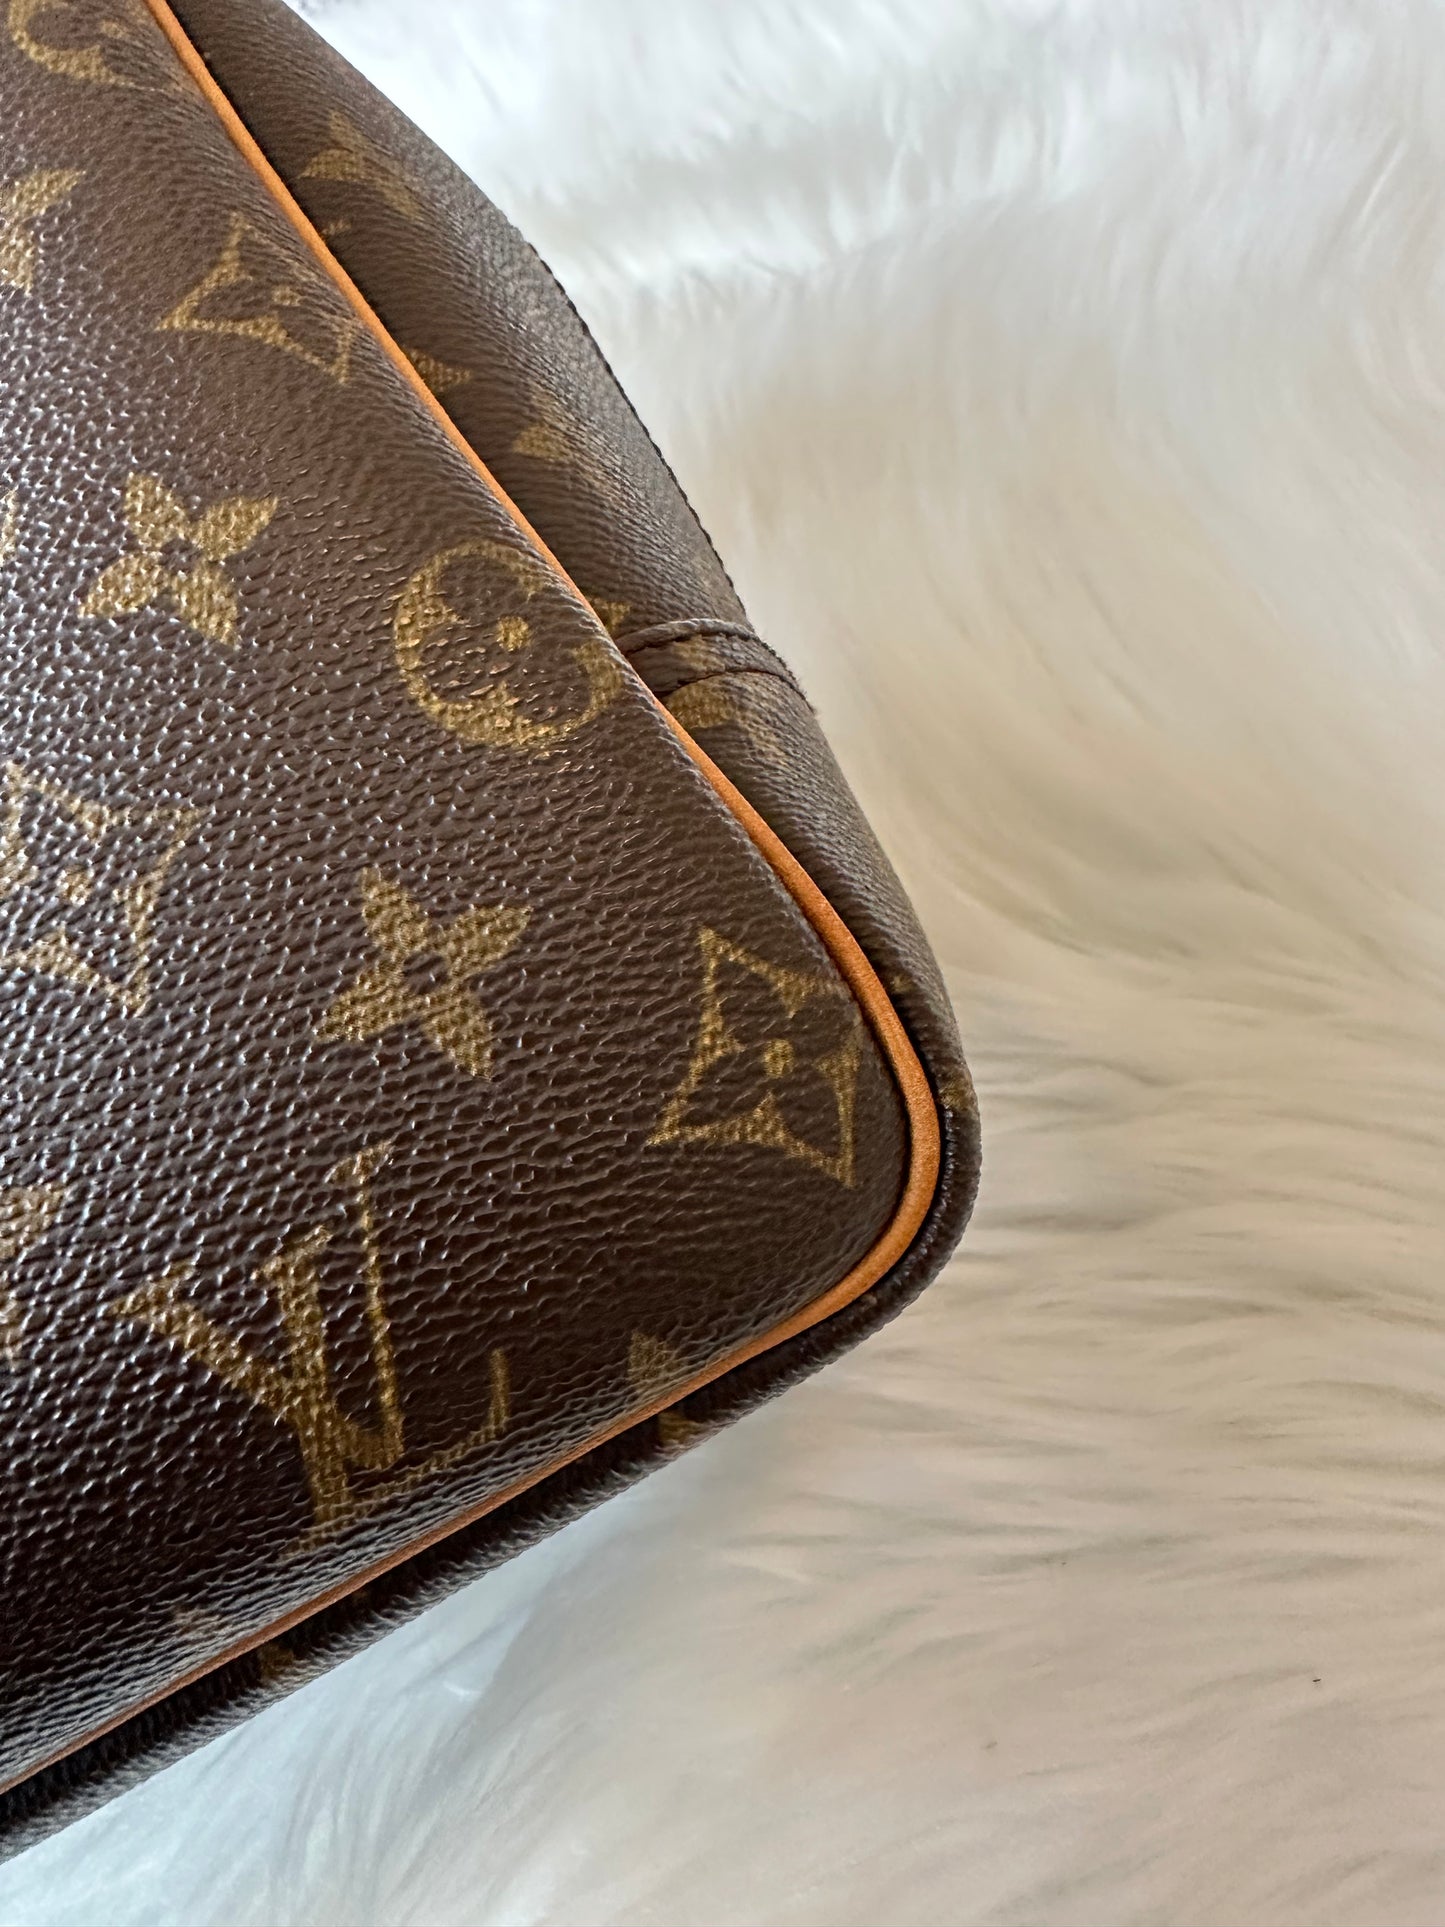 Pre-owned Authentic Louis Vuitton Deauville Monogram Handbag